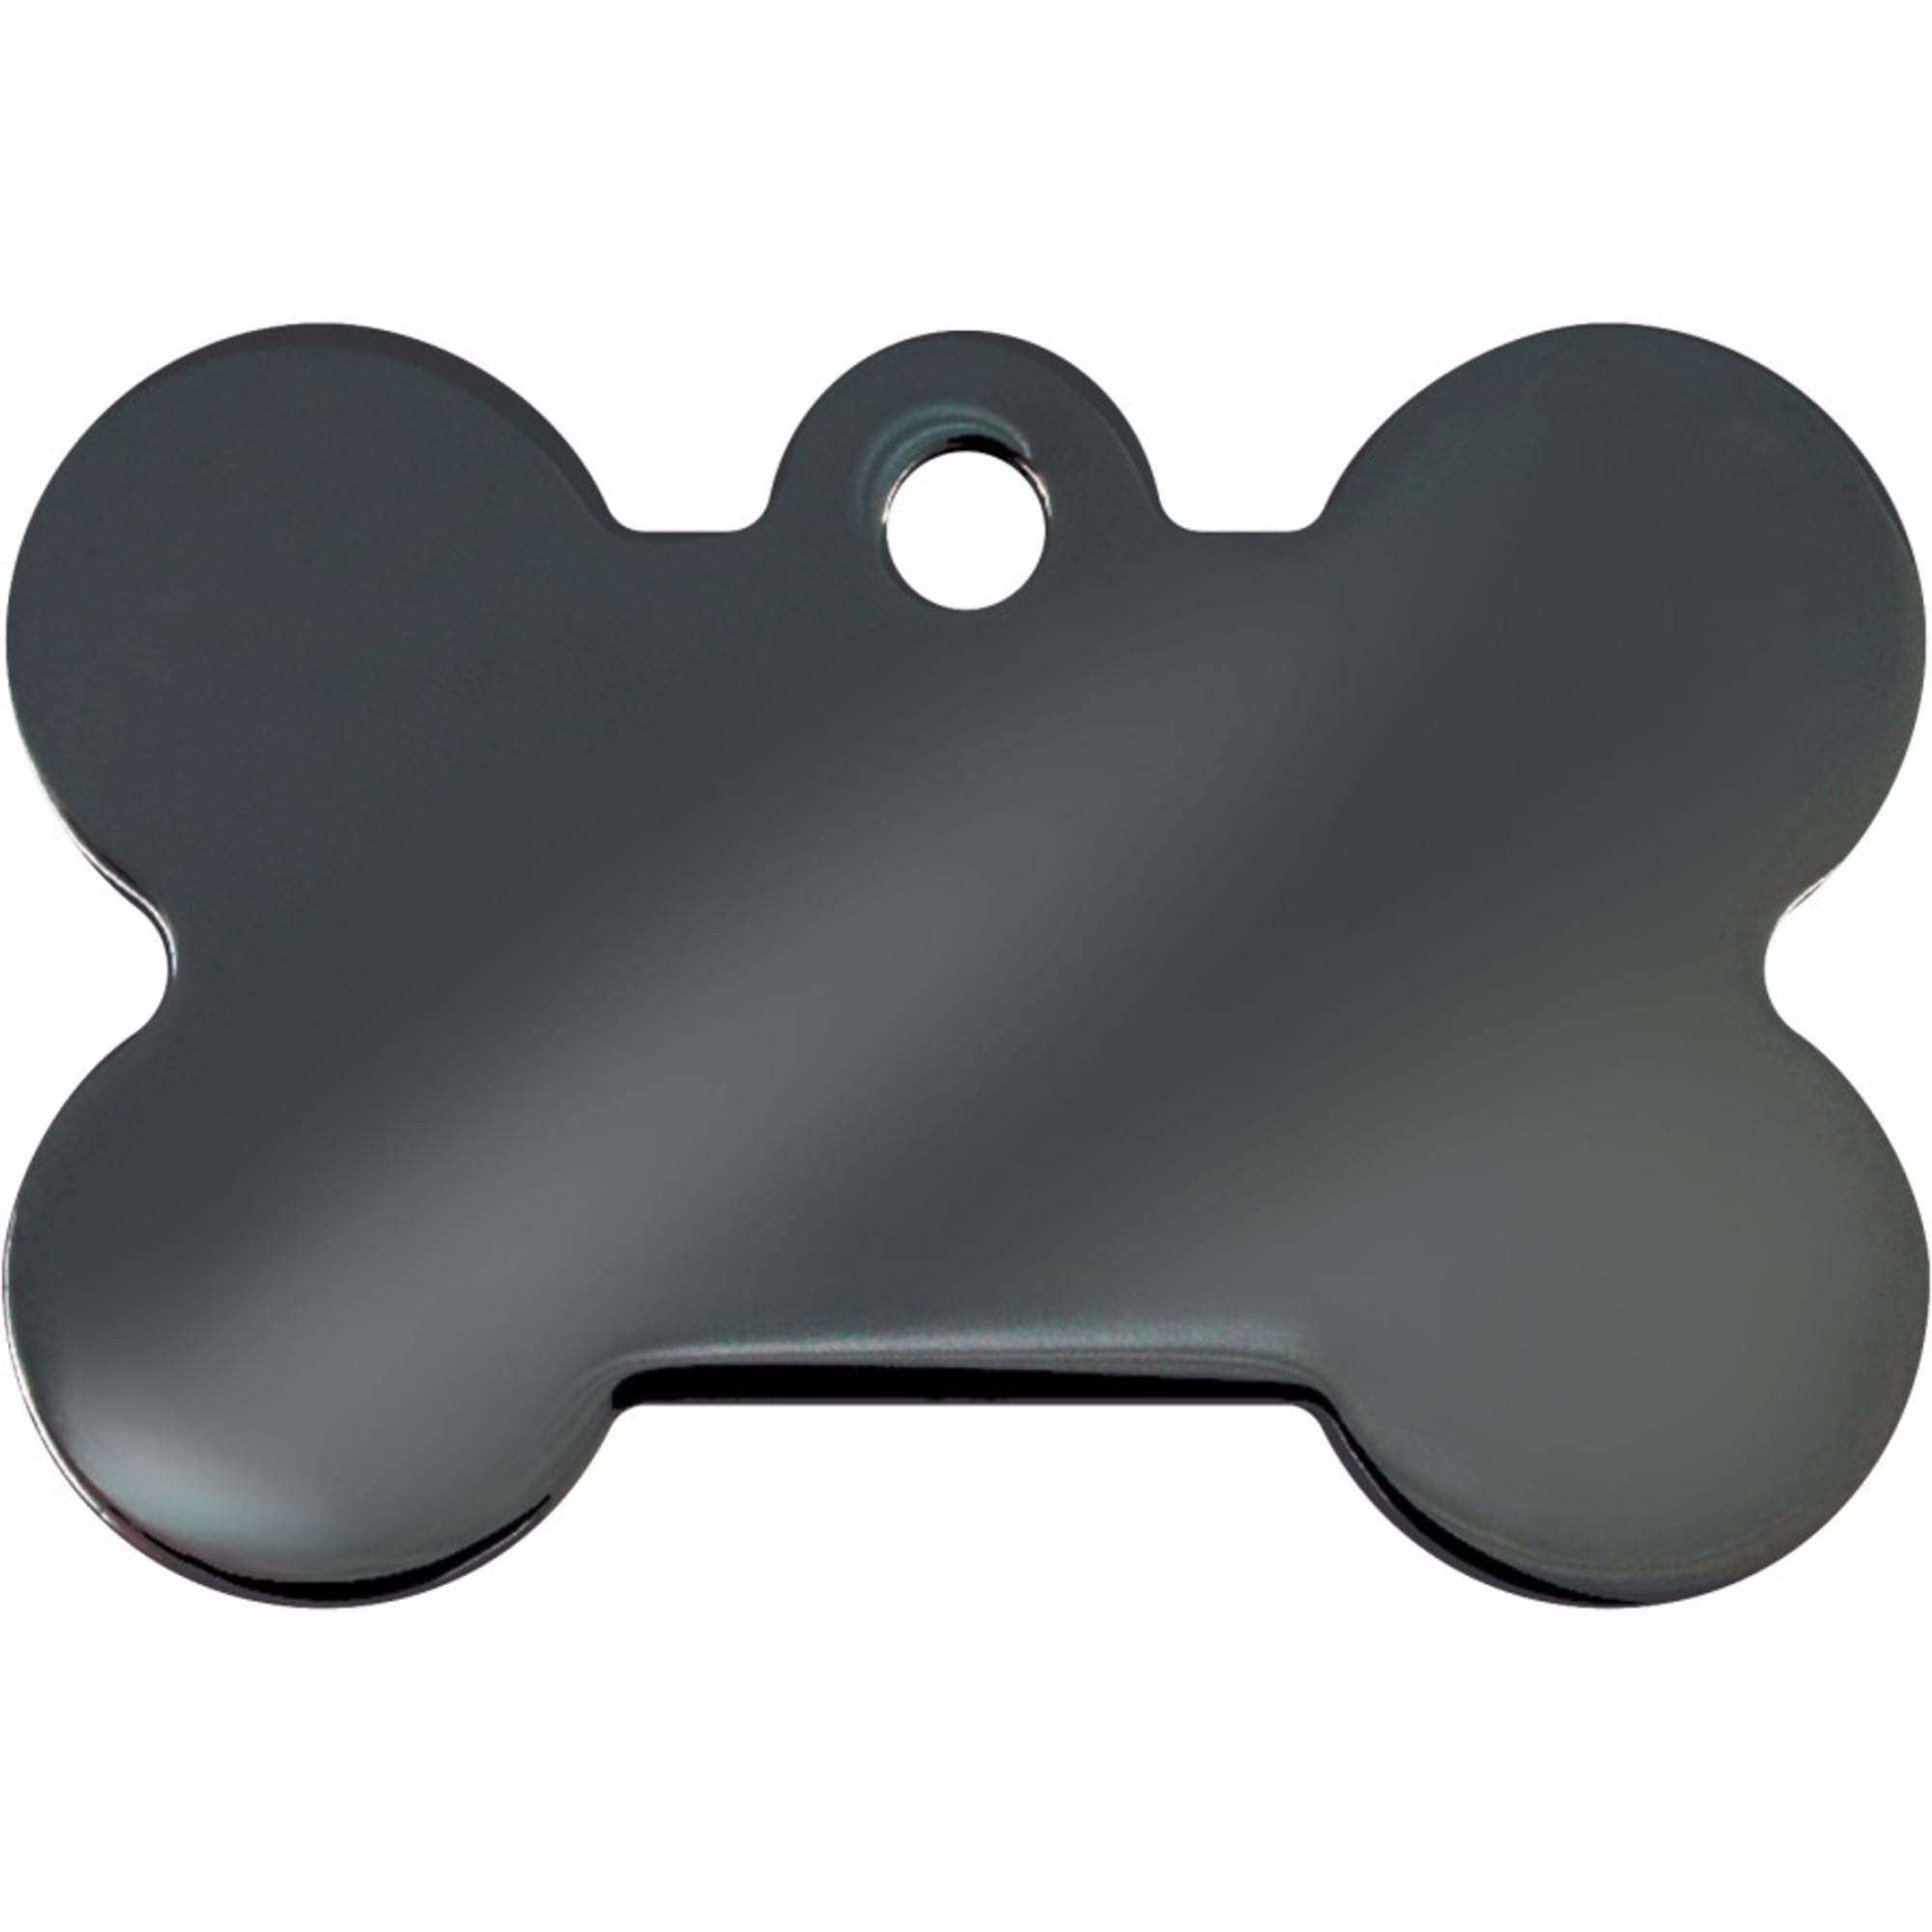 TagWorks Black Floral Bone Personalized Pet ID Tag | PetSmart